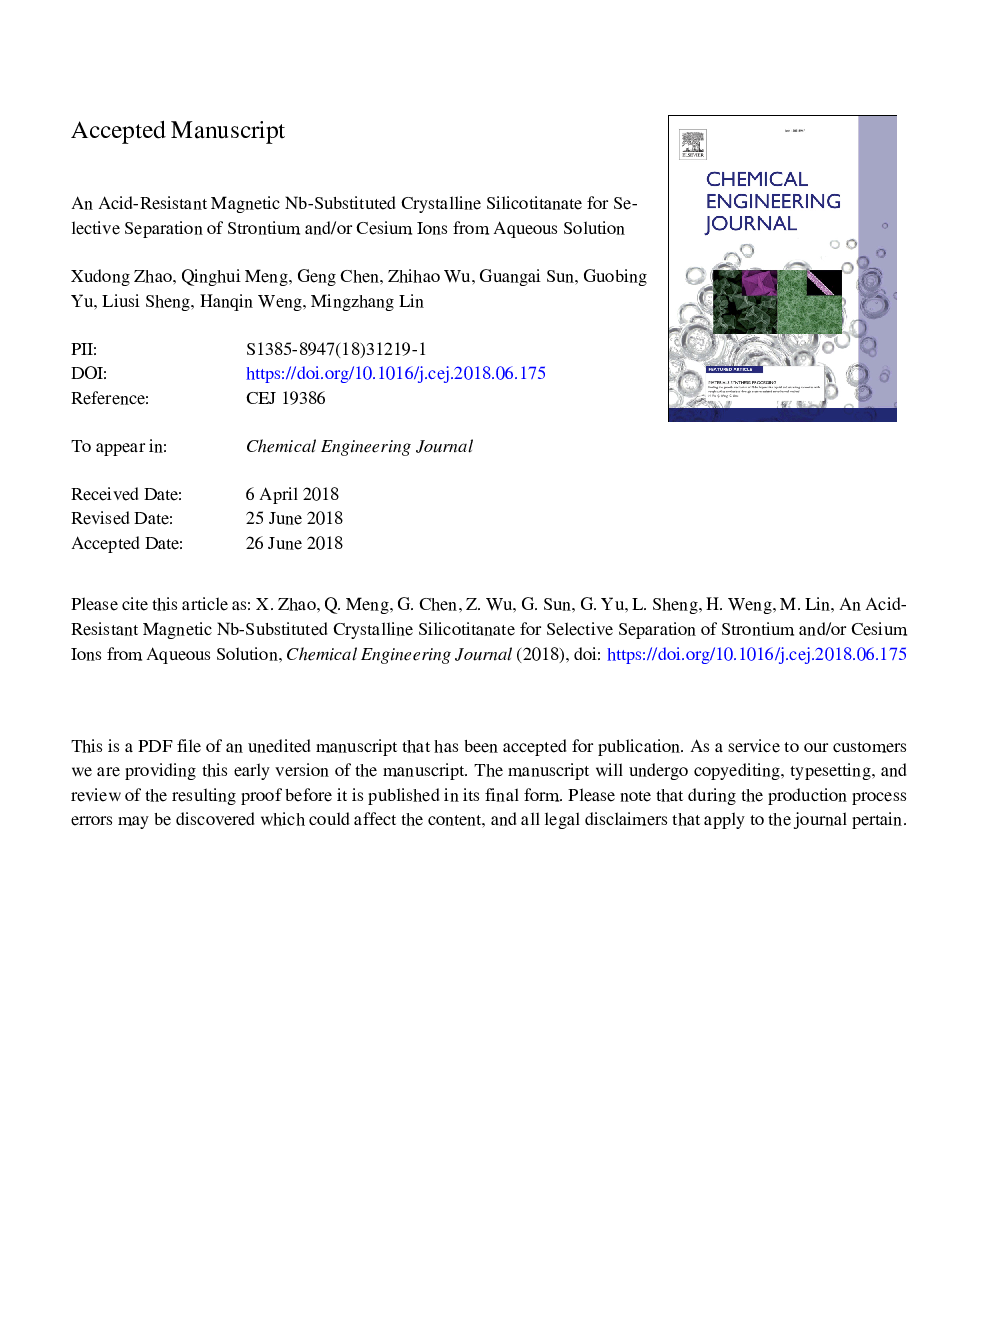 یک سیلیکاتیتانات کریستالی مغناطیسی مقاوم در برابر اسید برای جداسازی انتخابی از یونهای استرانتیوم و / یا سزیم از محلول آبی 